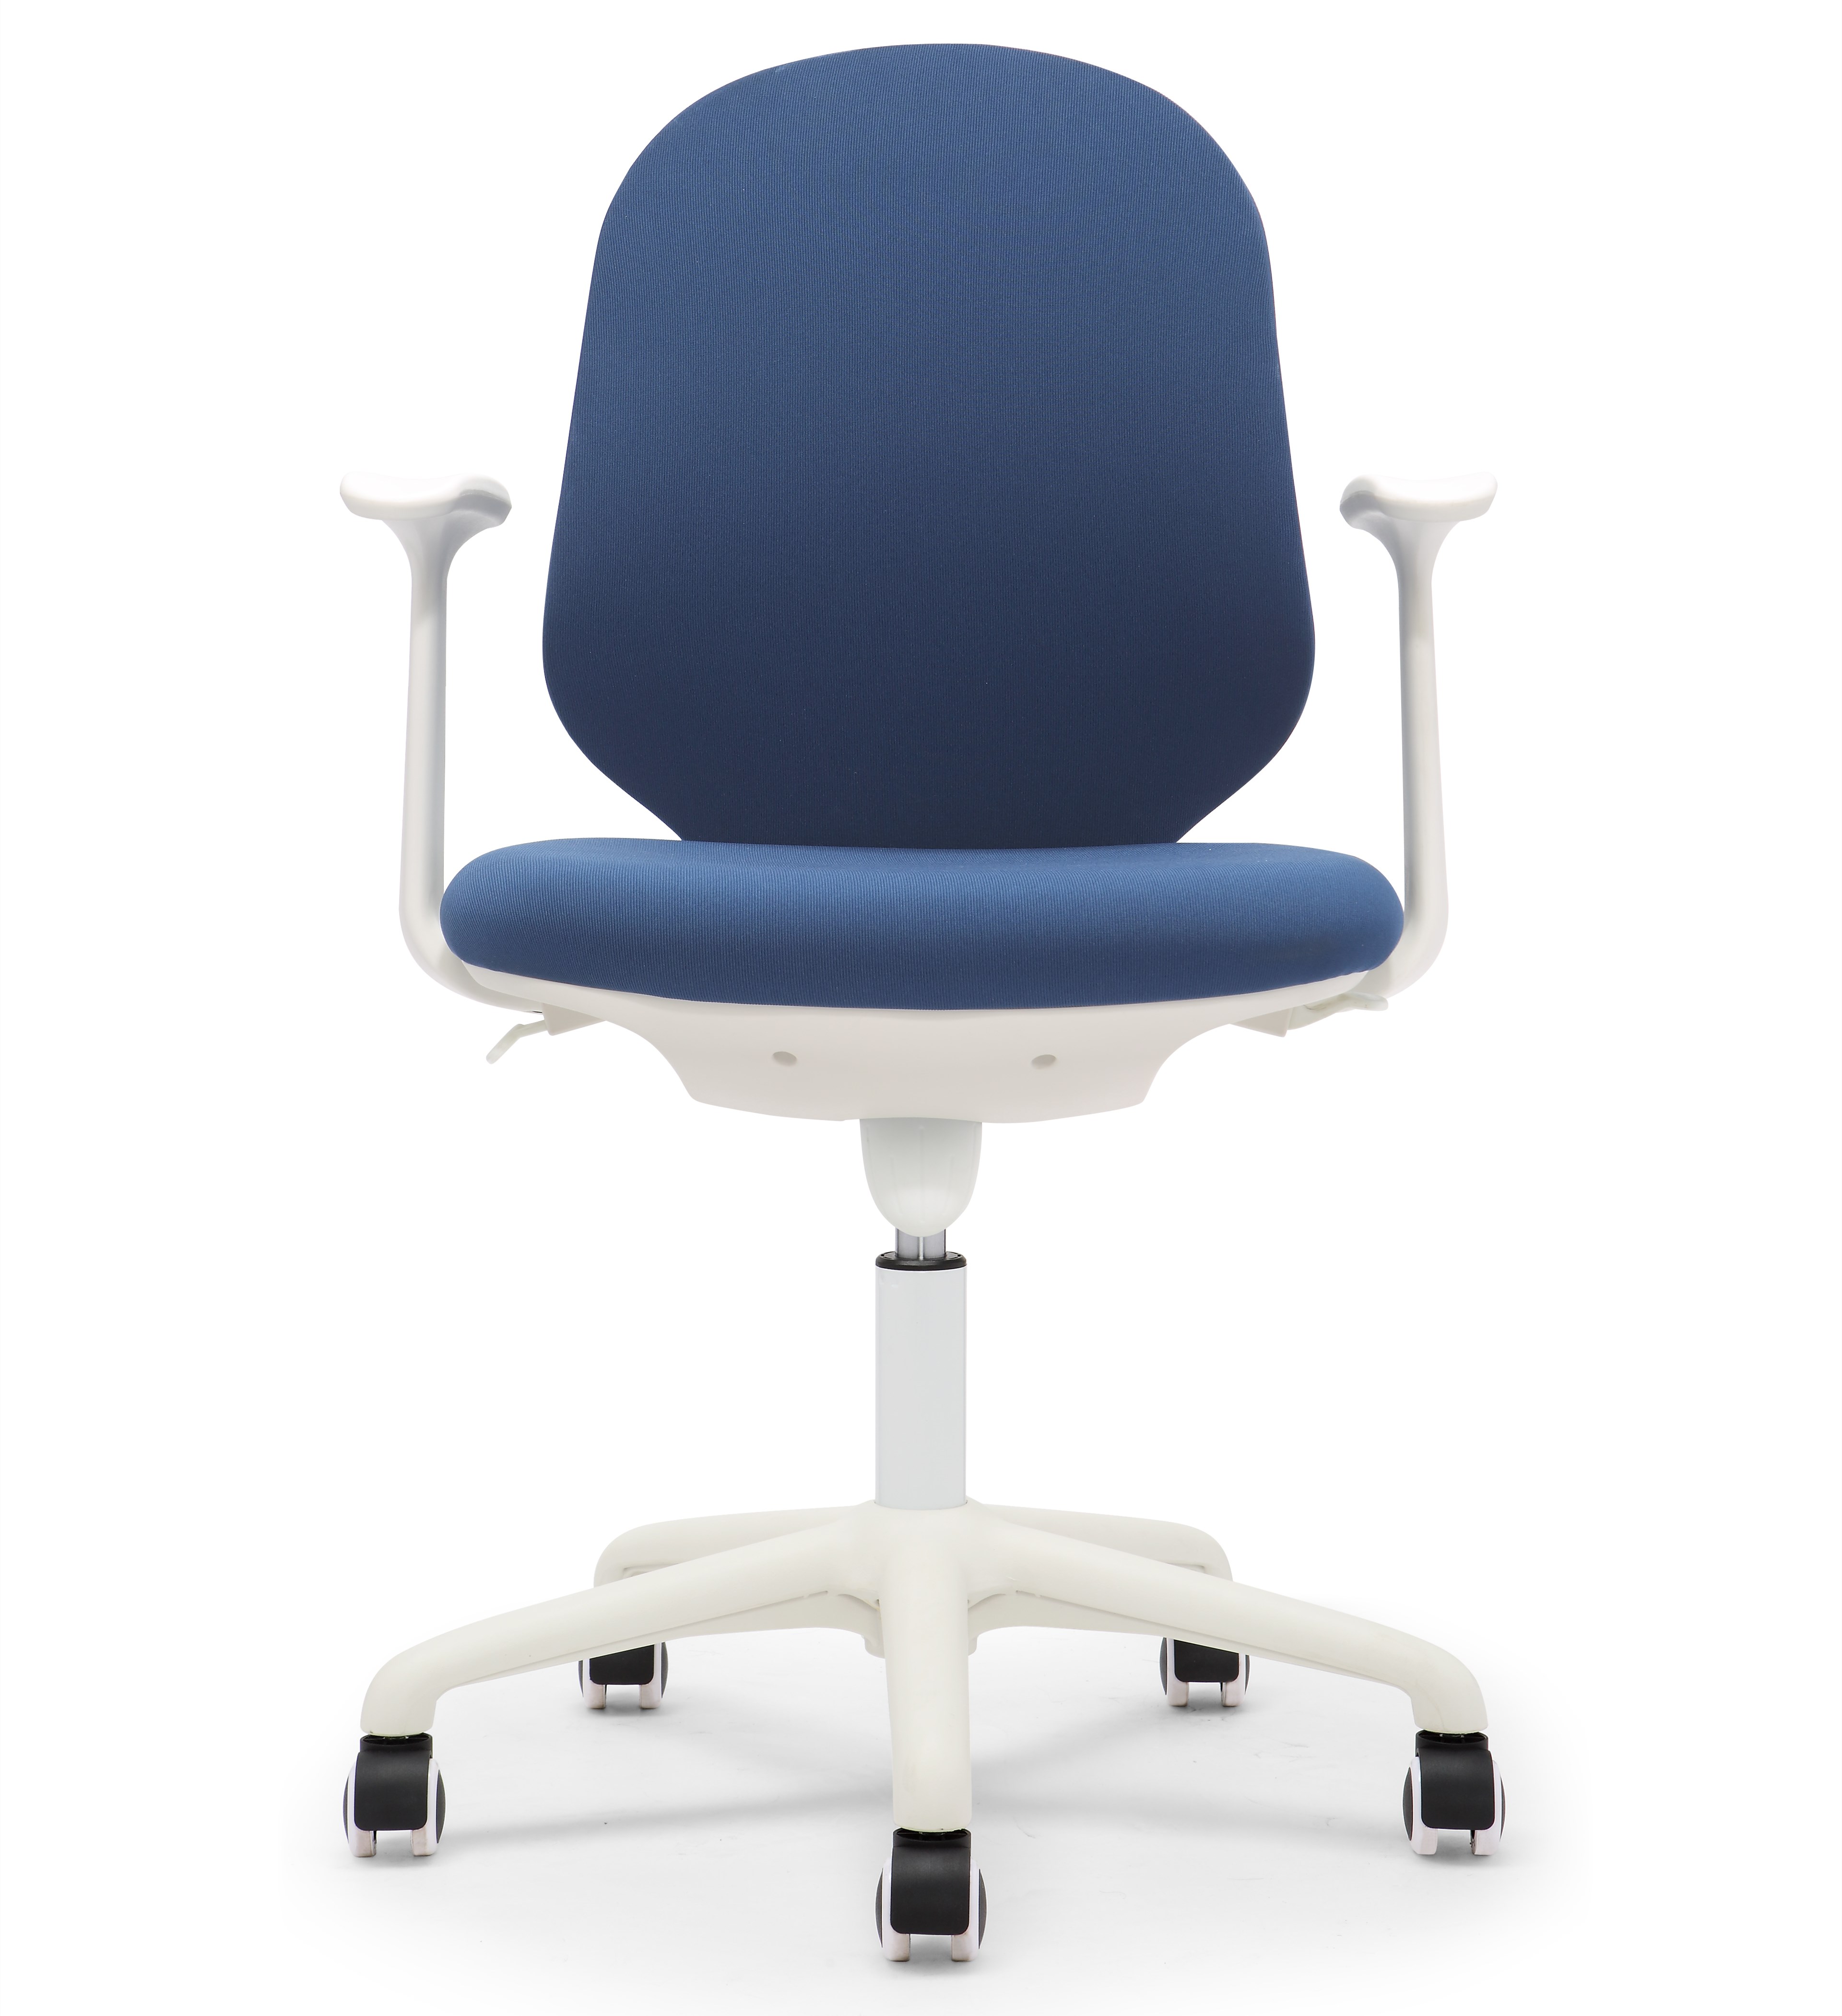 简约现代办公椅电脑椅 PP603GATL-WH 白胶